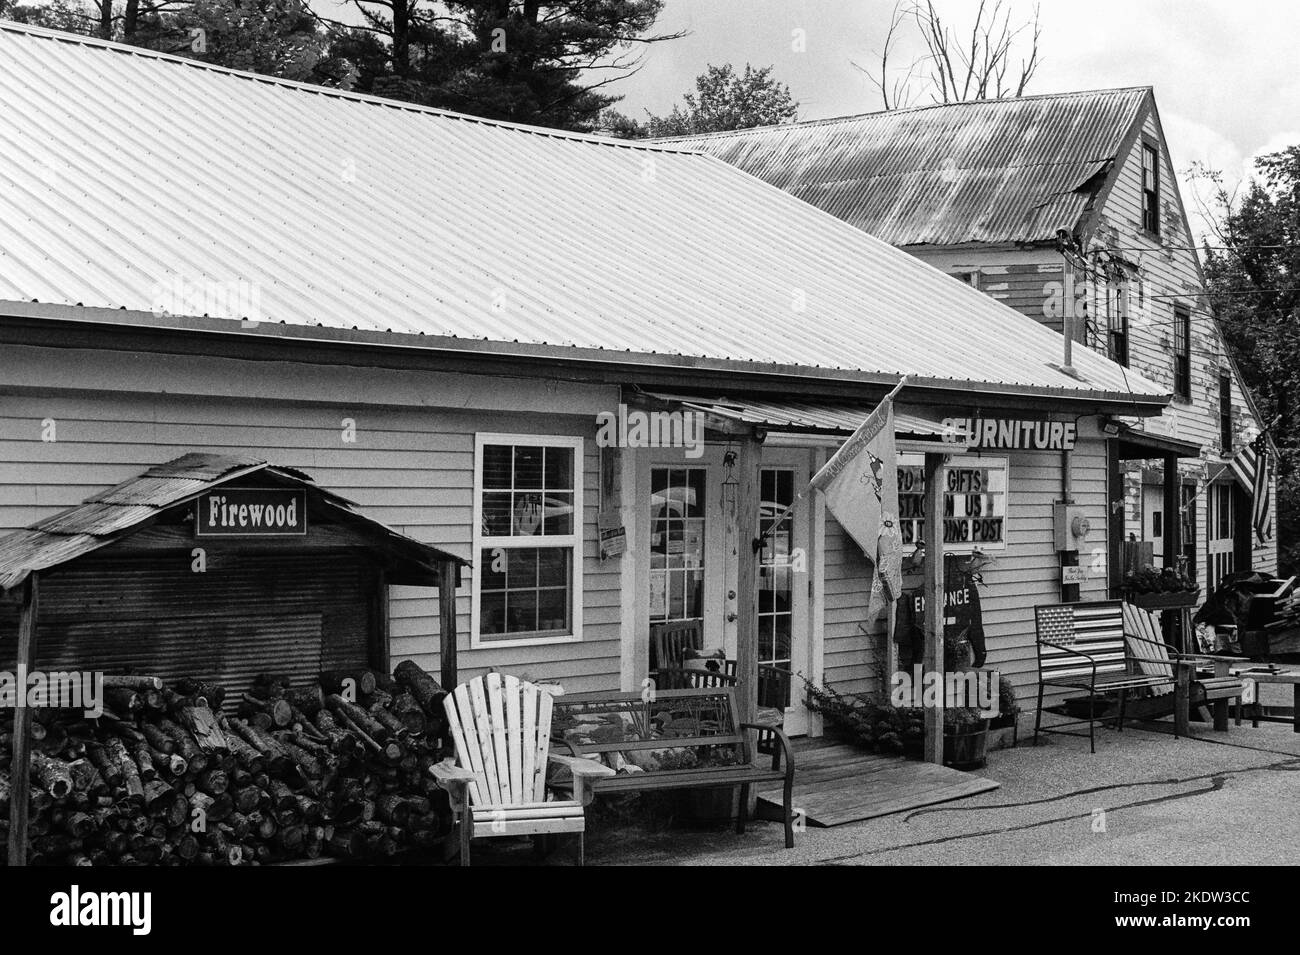 Nutes Trading Post - un classico negozio di articoli da regalo a bordo strada in Union, New Hampshire. L'immagine è stata acquisita su pellicola analogica in bianco e nero. Foto Stock